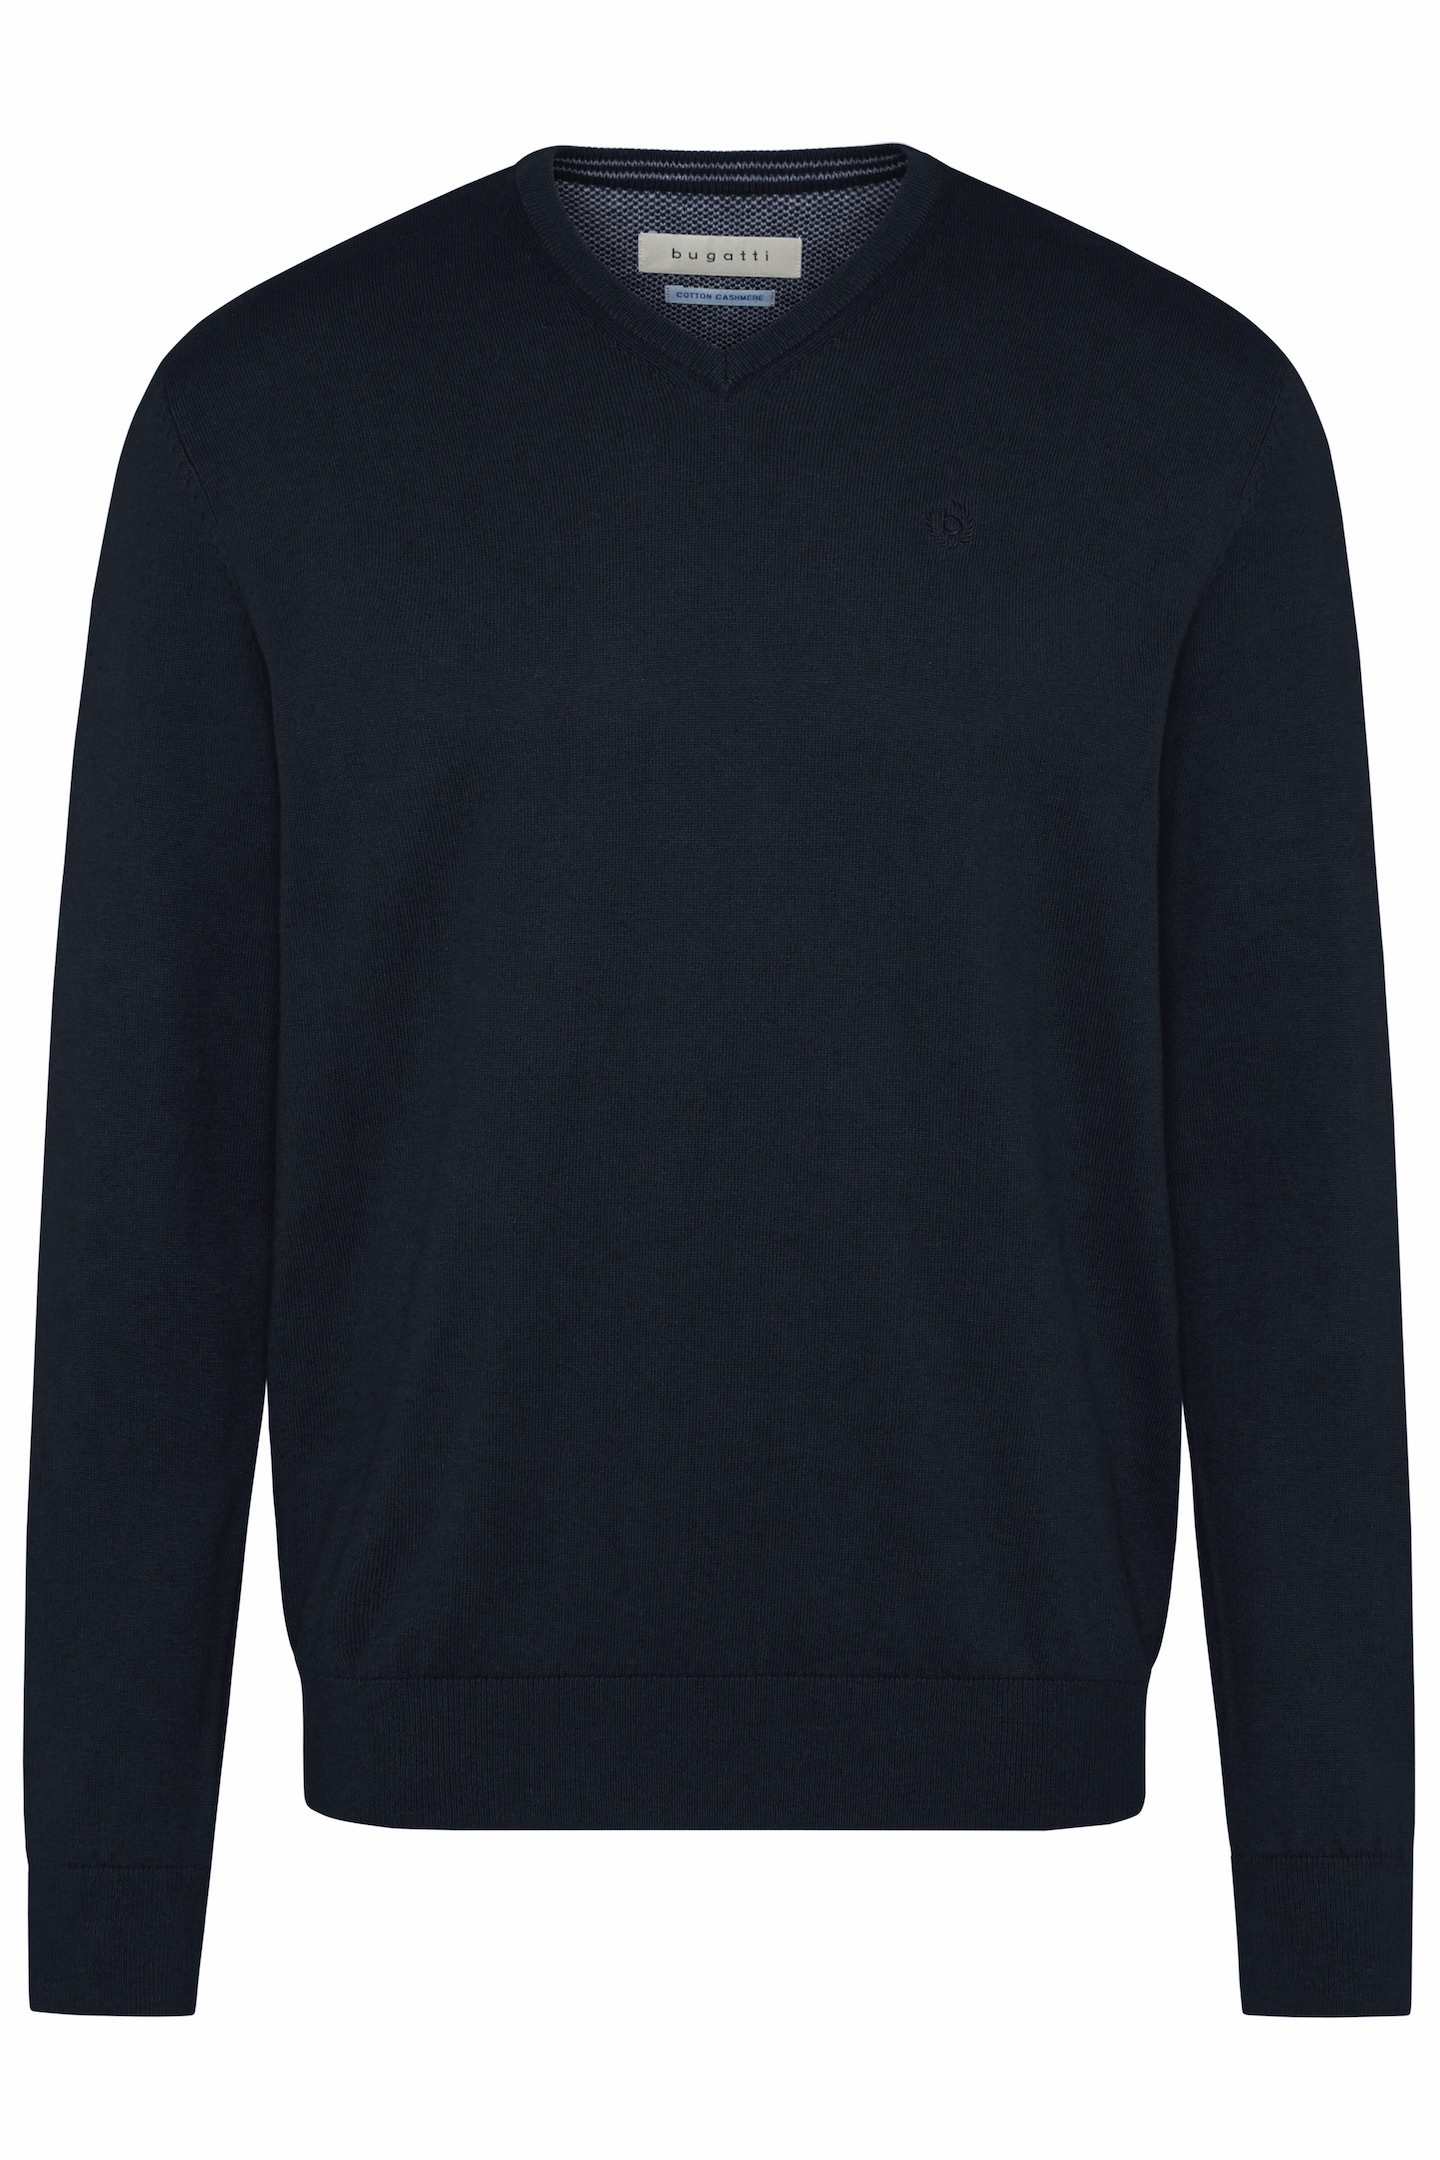 ➤ Pullover versandkostenfrei - ohne bestellen Mindestbestellwert